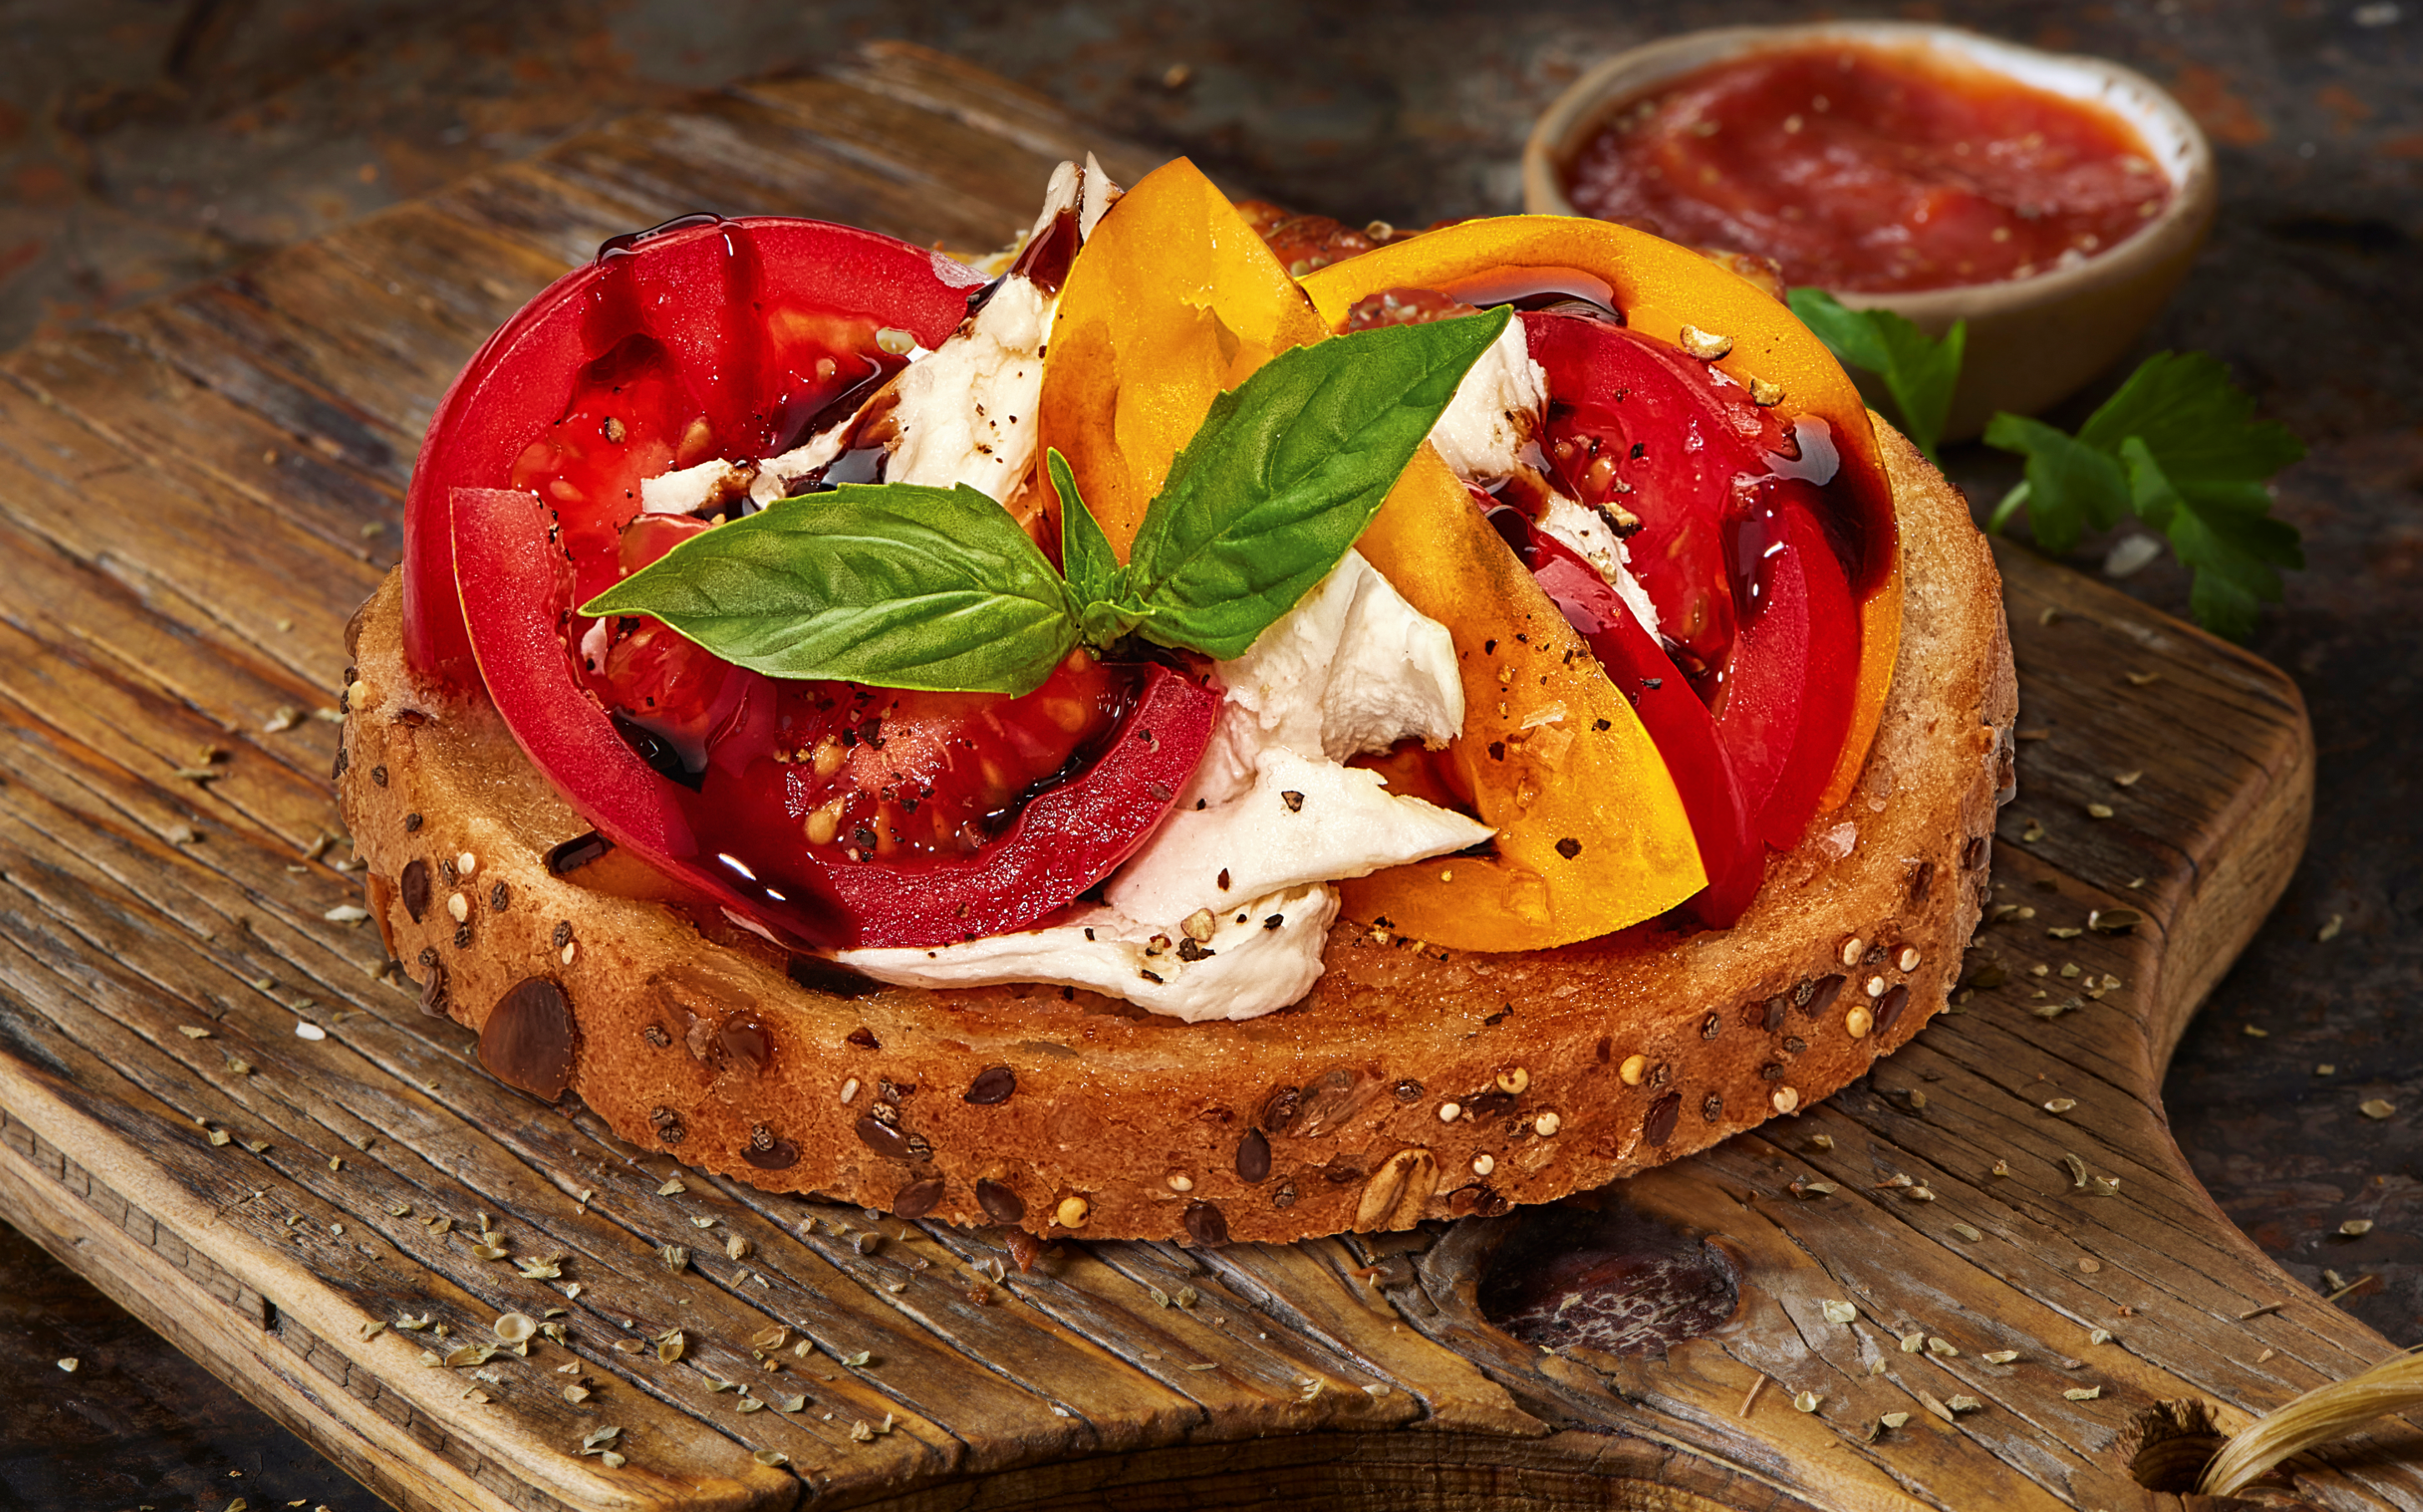 Tomato Mozzarella Open-faced Sandwich Recipe